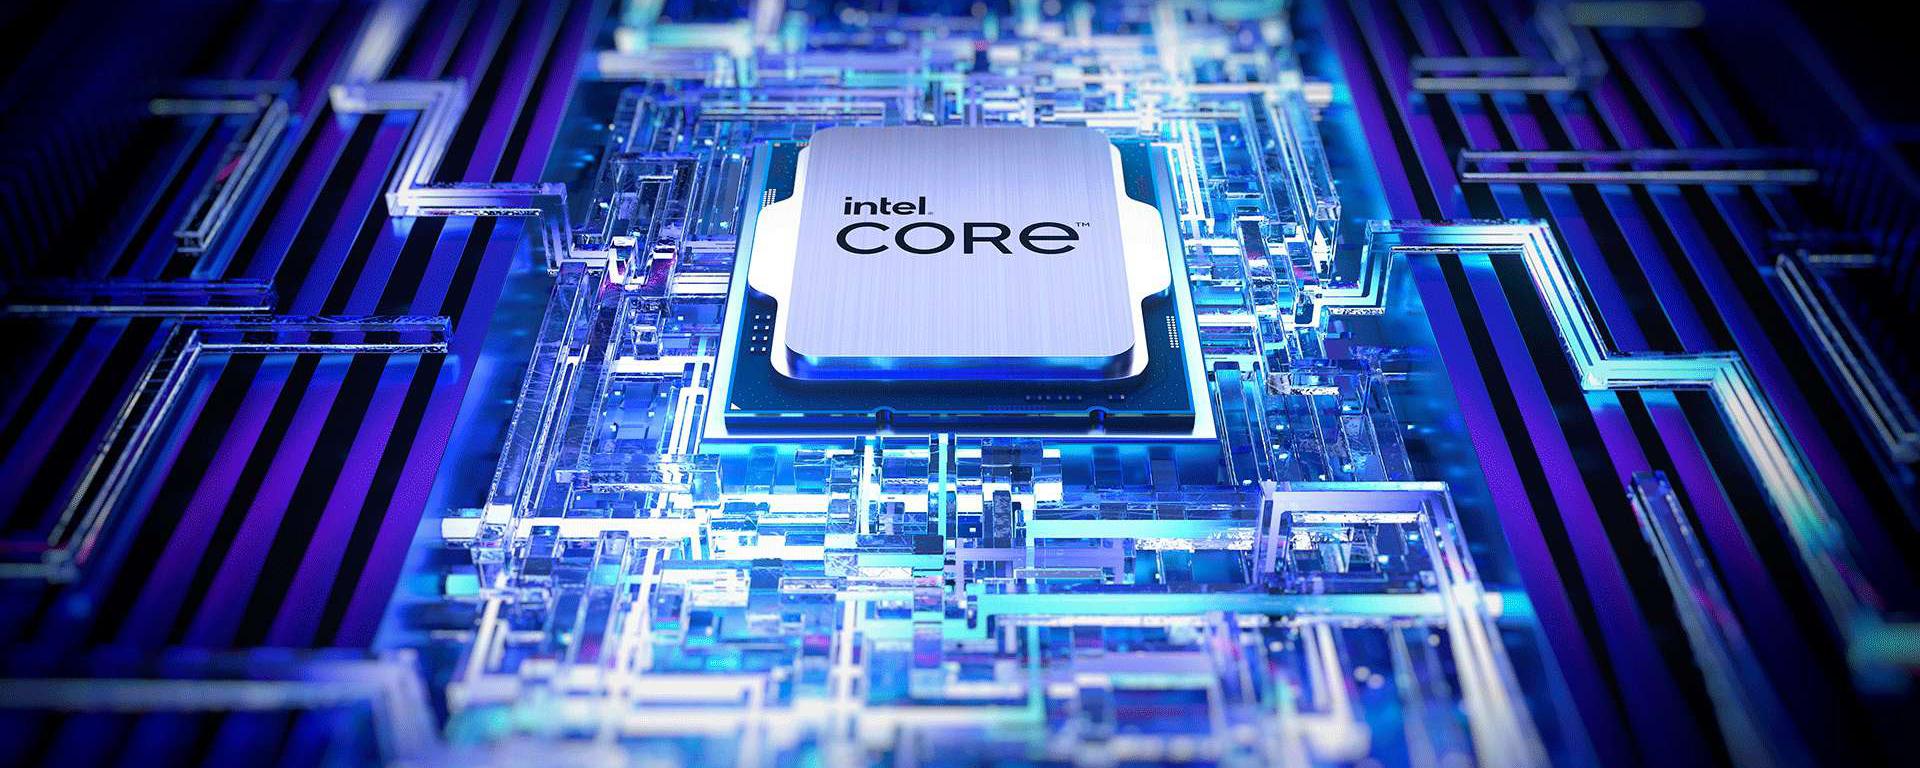 Intel Core i5-13600K - Review: ¿qué tan potente es el procesador de entrada  de la generación Raptor Lake?, Videojuegos, España, México, Colombia, TECNOLOGIA